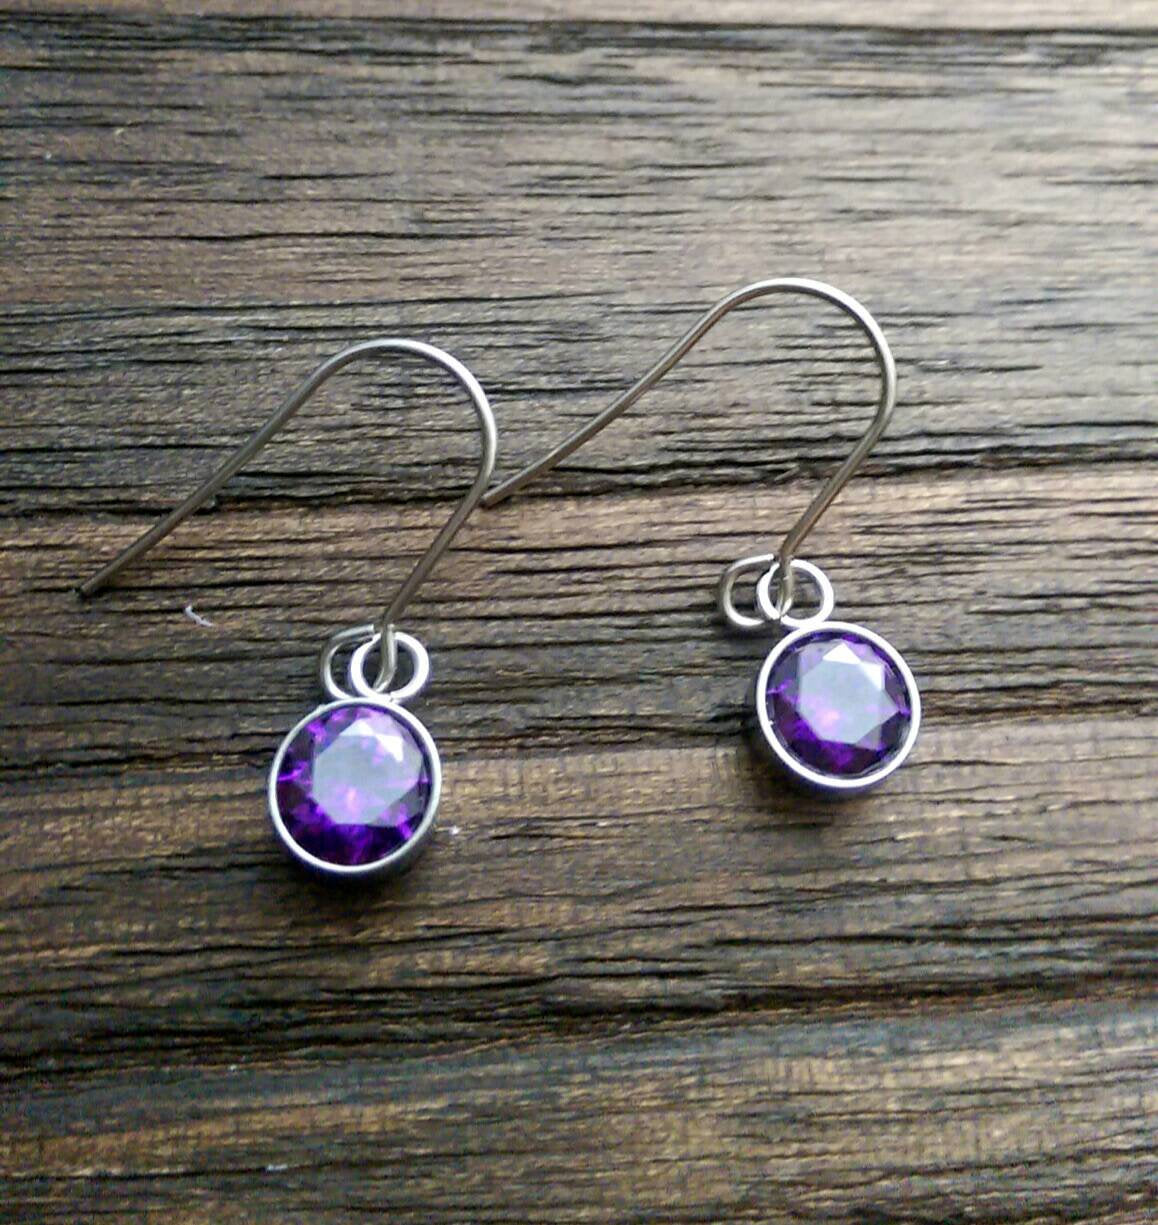 Purple Cubic Zirconia Dangle Bezel Earrings, CZ Dangle Earrings, Stainless Steel Hook Earrings - Silver and Resin Designs